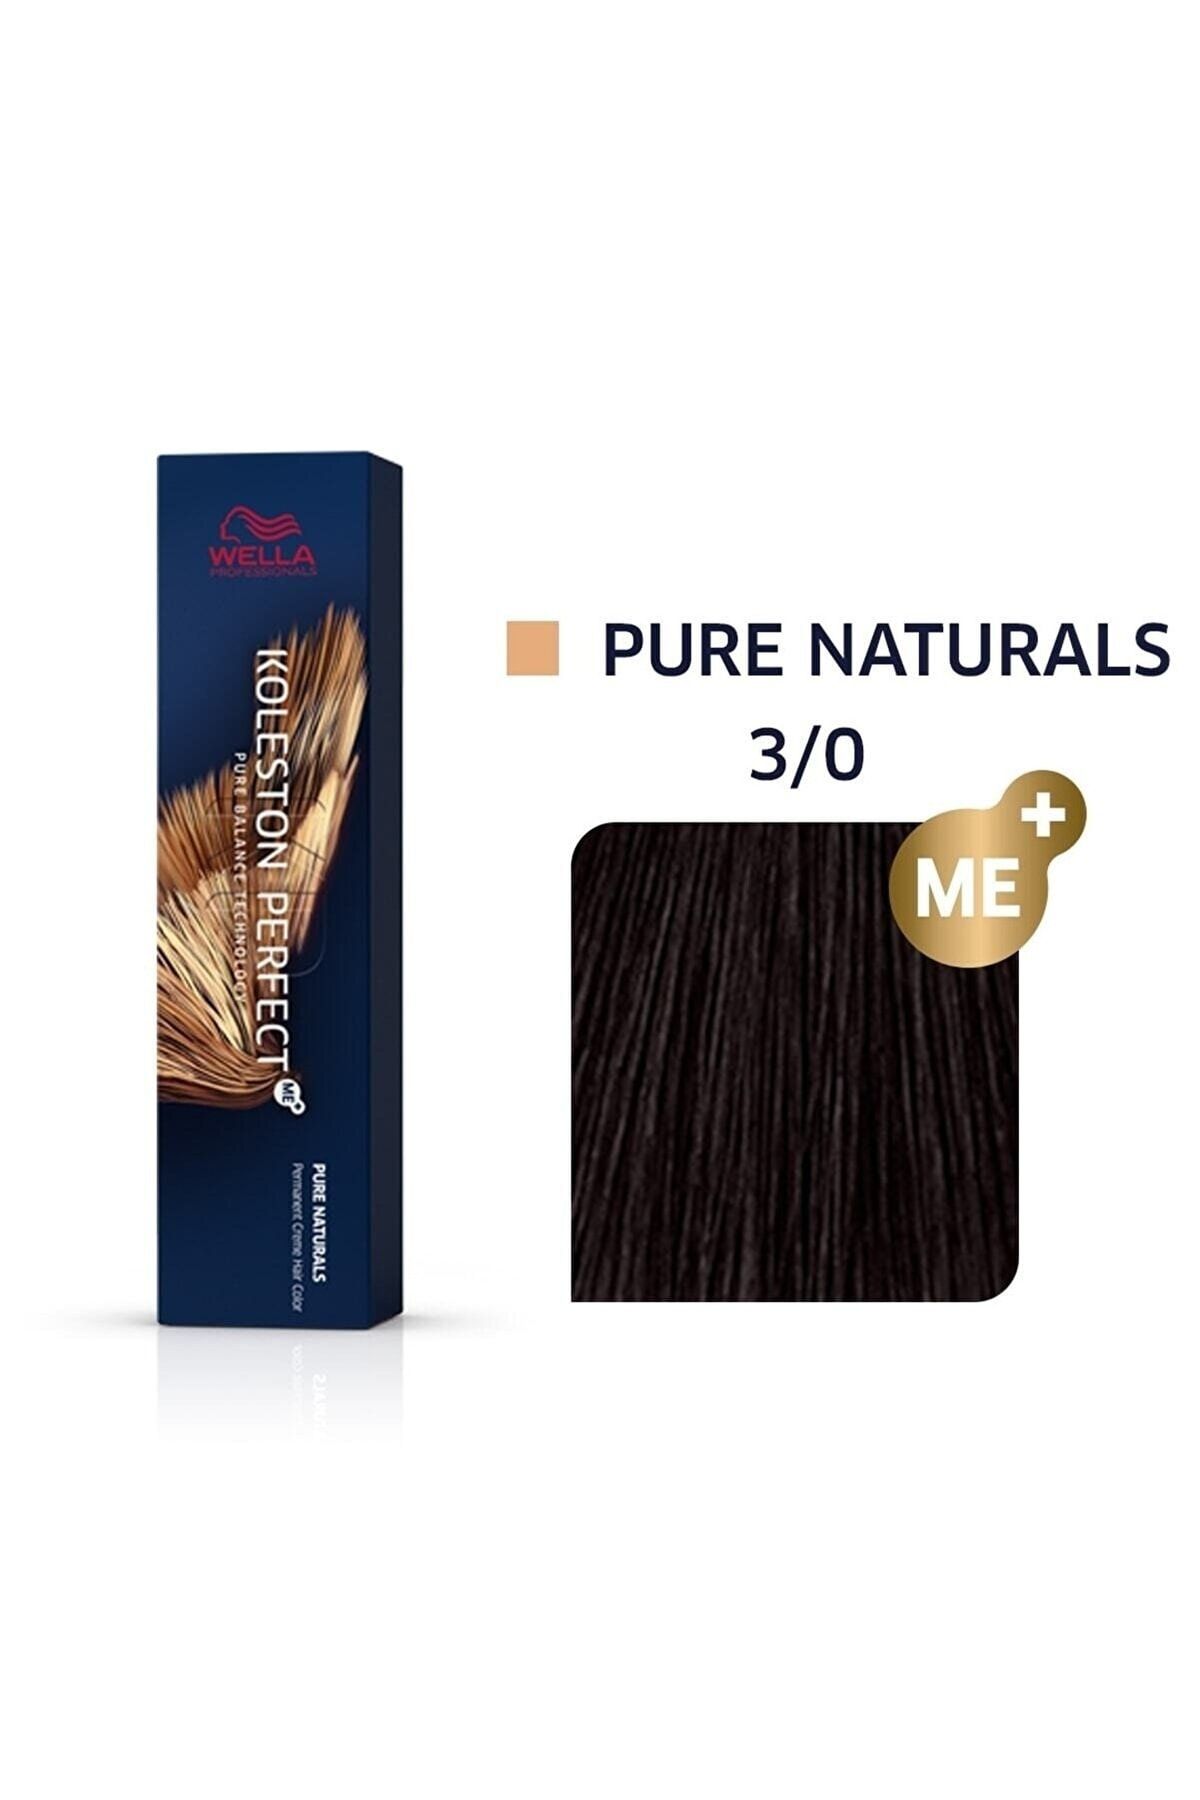 Wella Koleston Perfect Me+ 3/0 Pure Naturals Süper Kalıcı Saç Boyası 60=ml keyonline